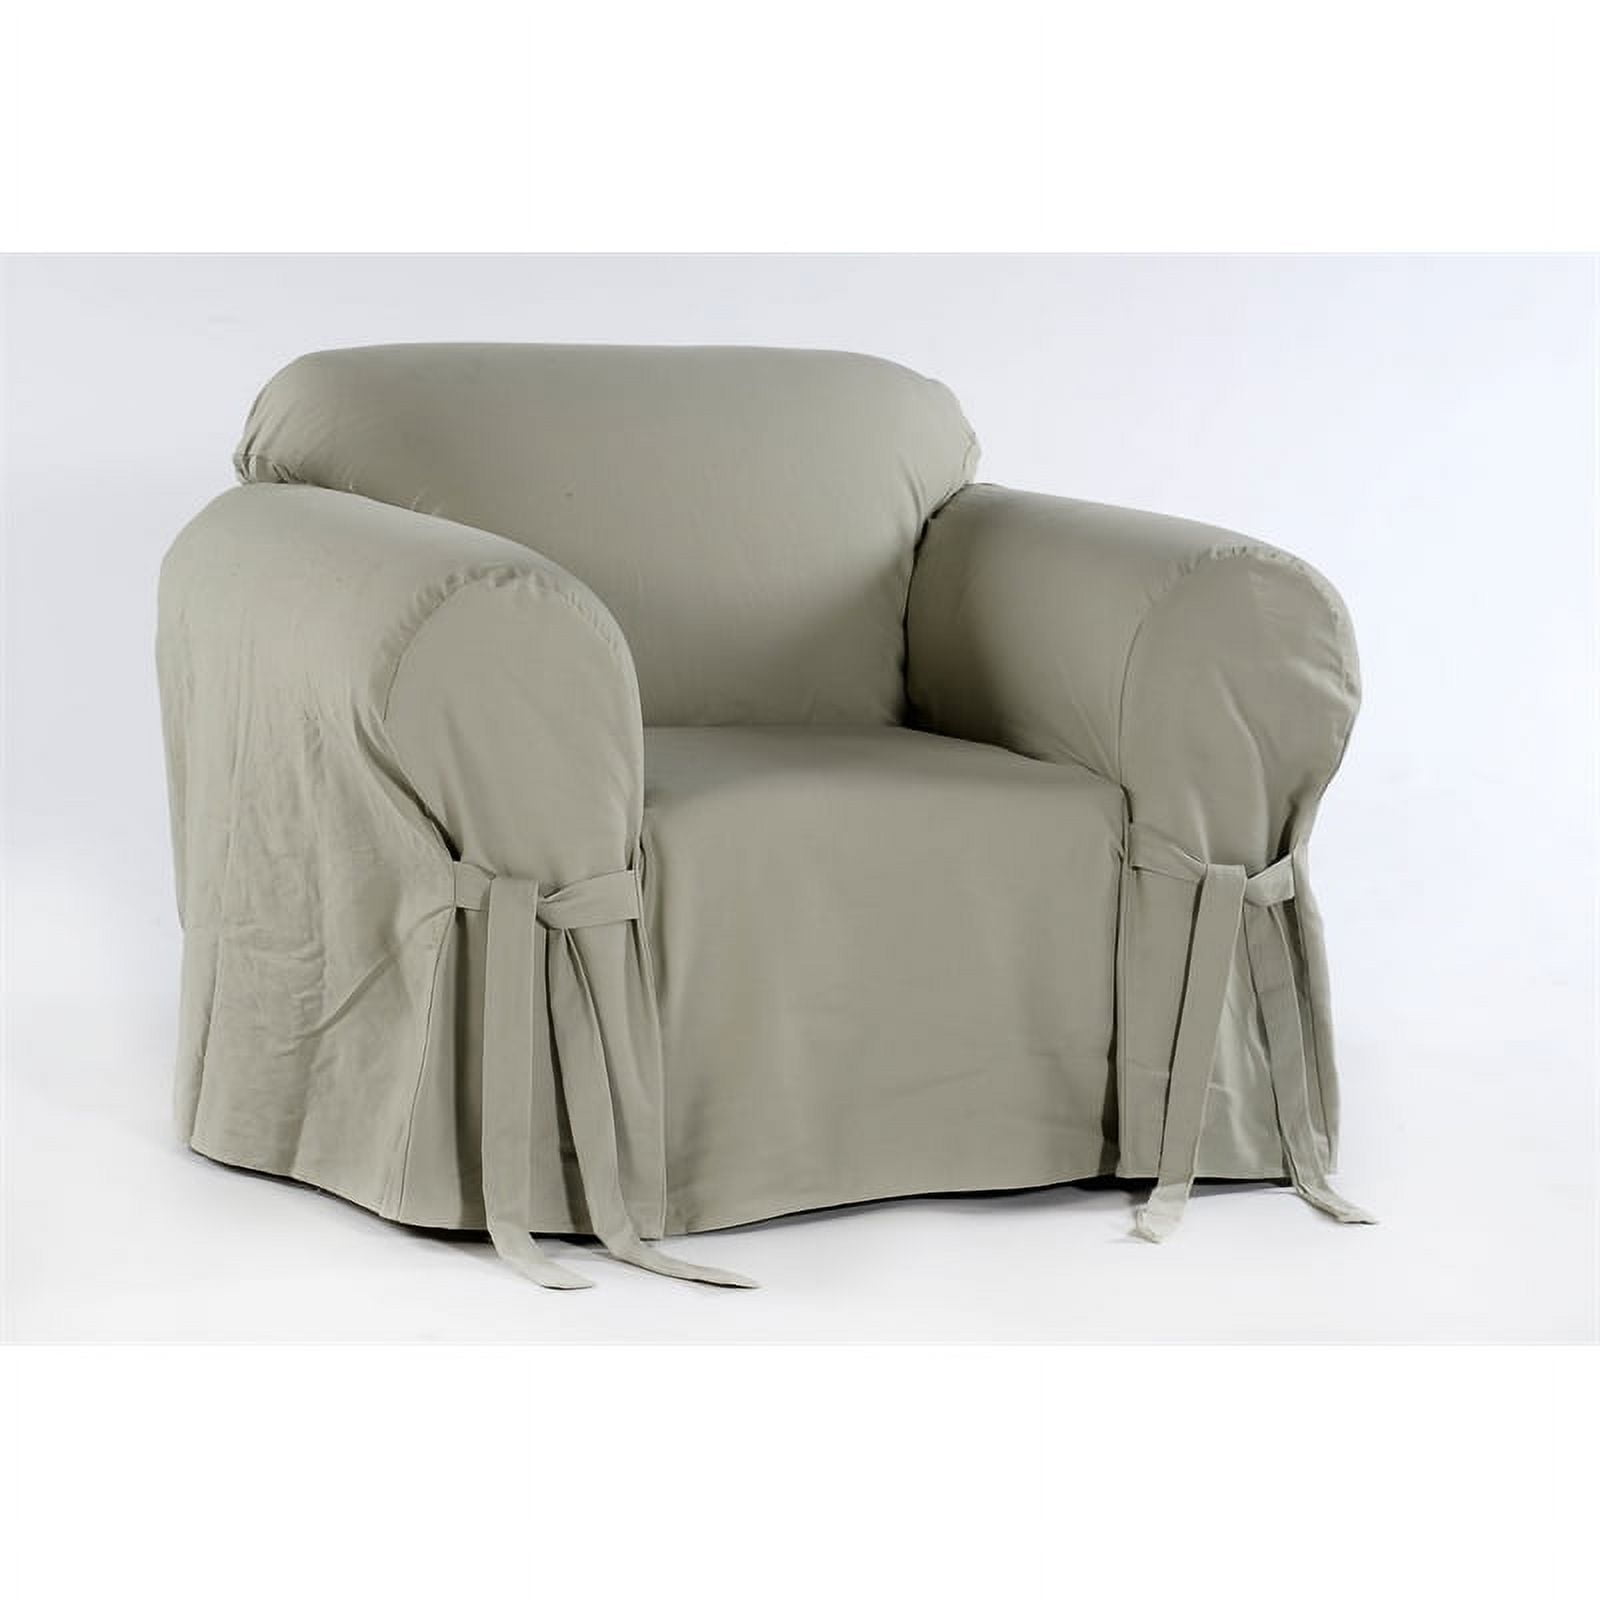 Mundo Hogar - Forros para las sillas del comedor, en 4 diseños, Compra los  tuyos en WhatsApp= 3186247199